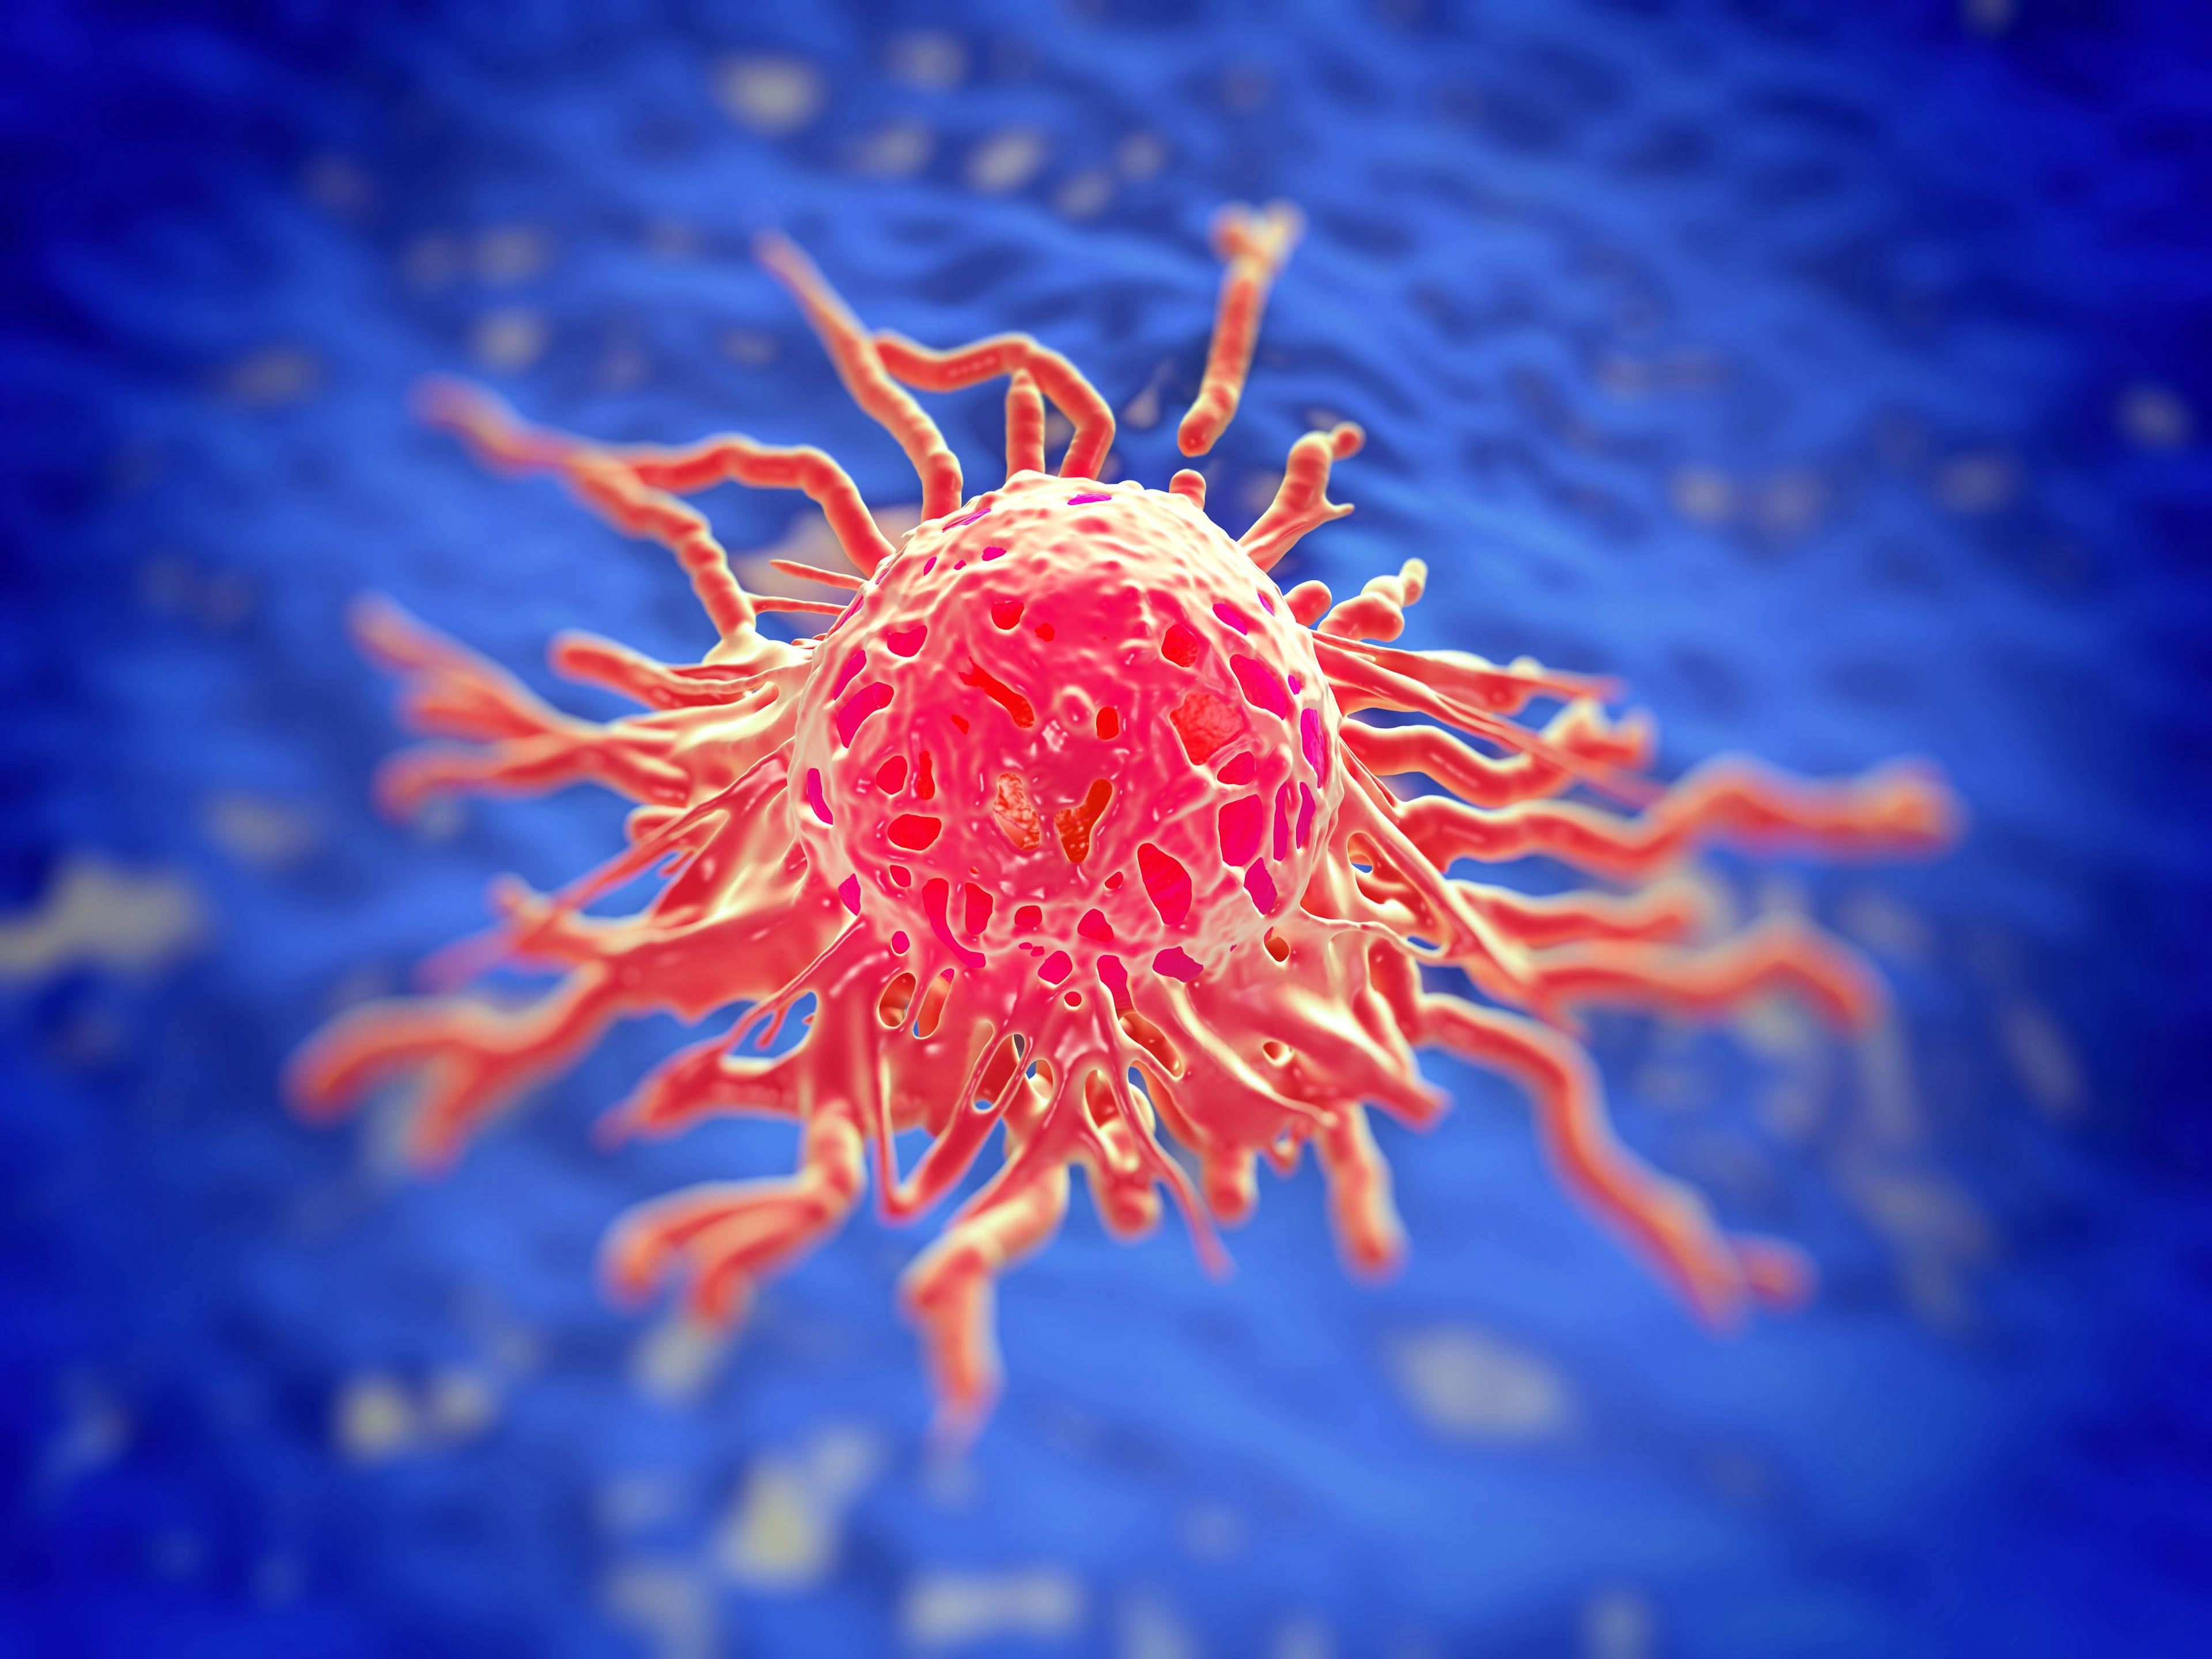 Image Credit: © PRB ARTS - www.stock.adobe.com | Cervical cancer cell, SEM of Cervical Carcinoma